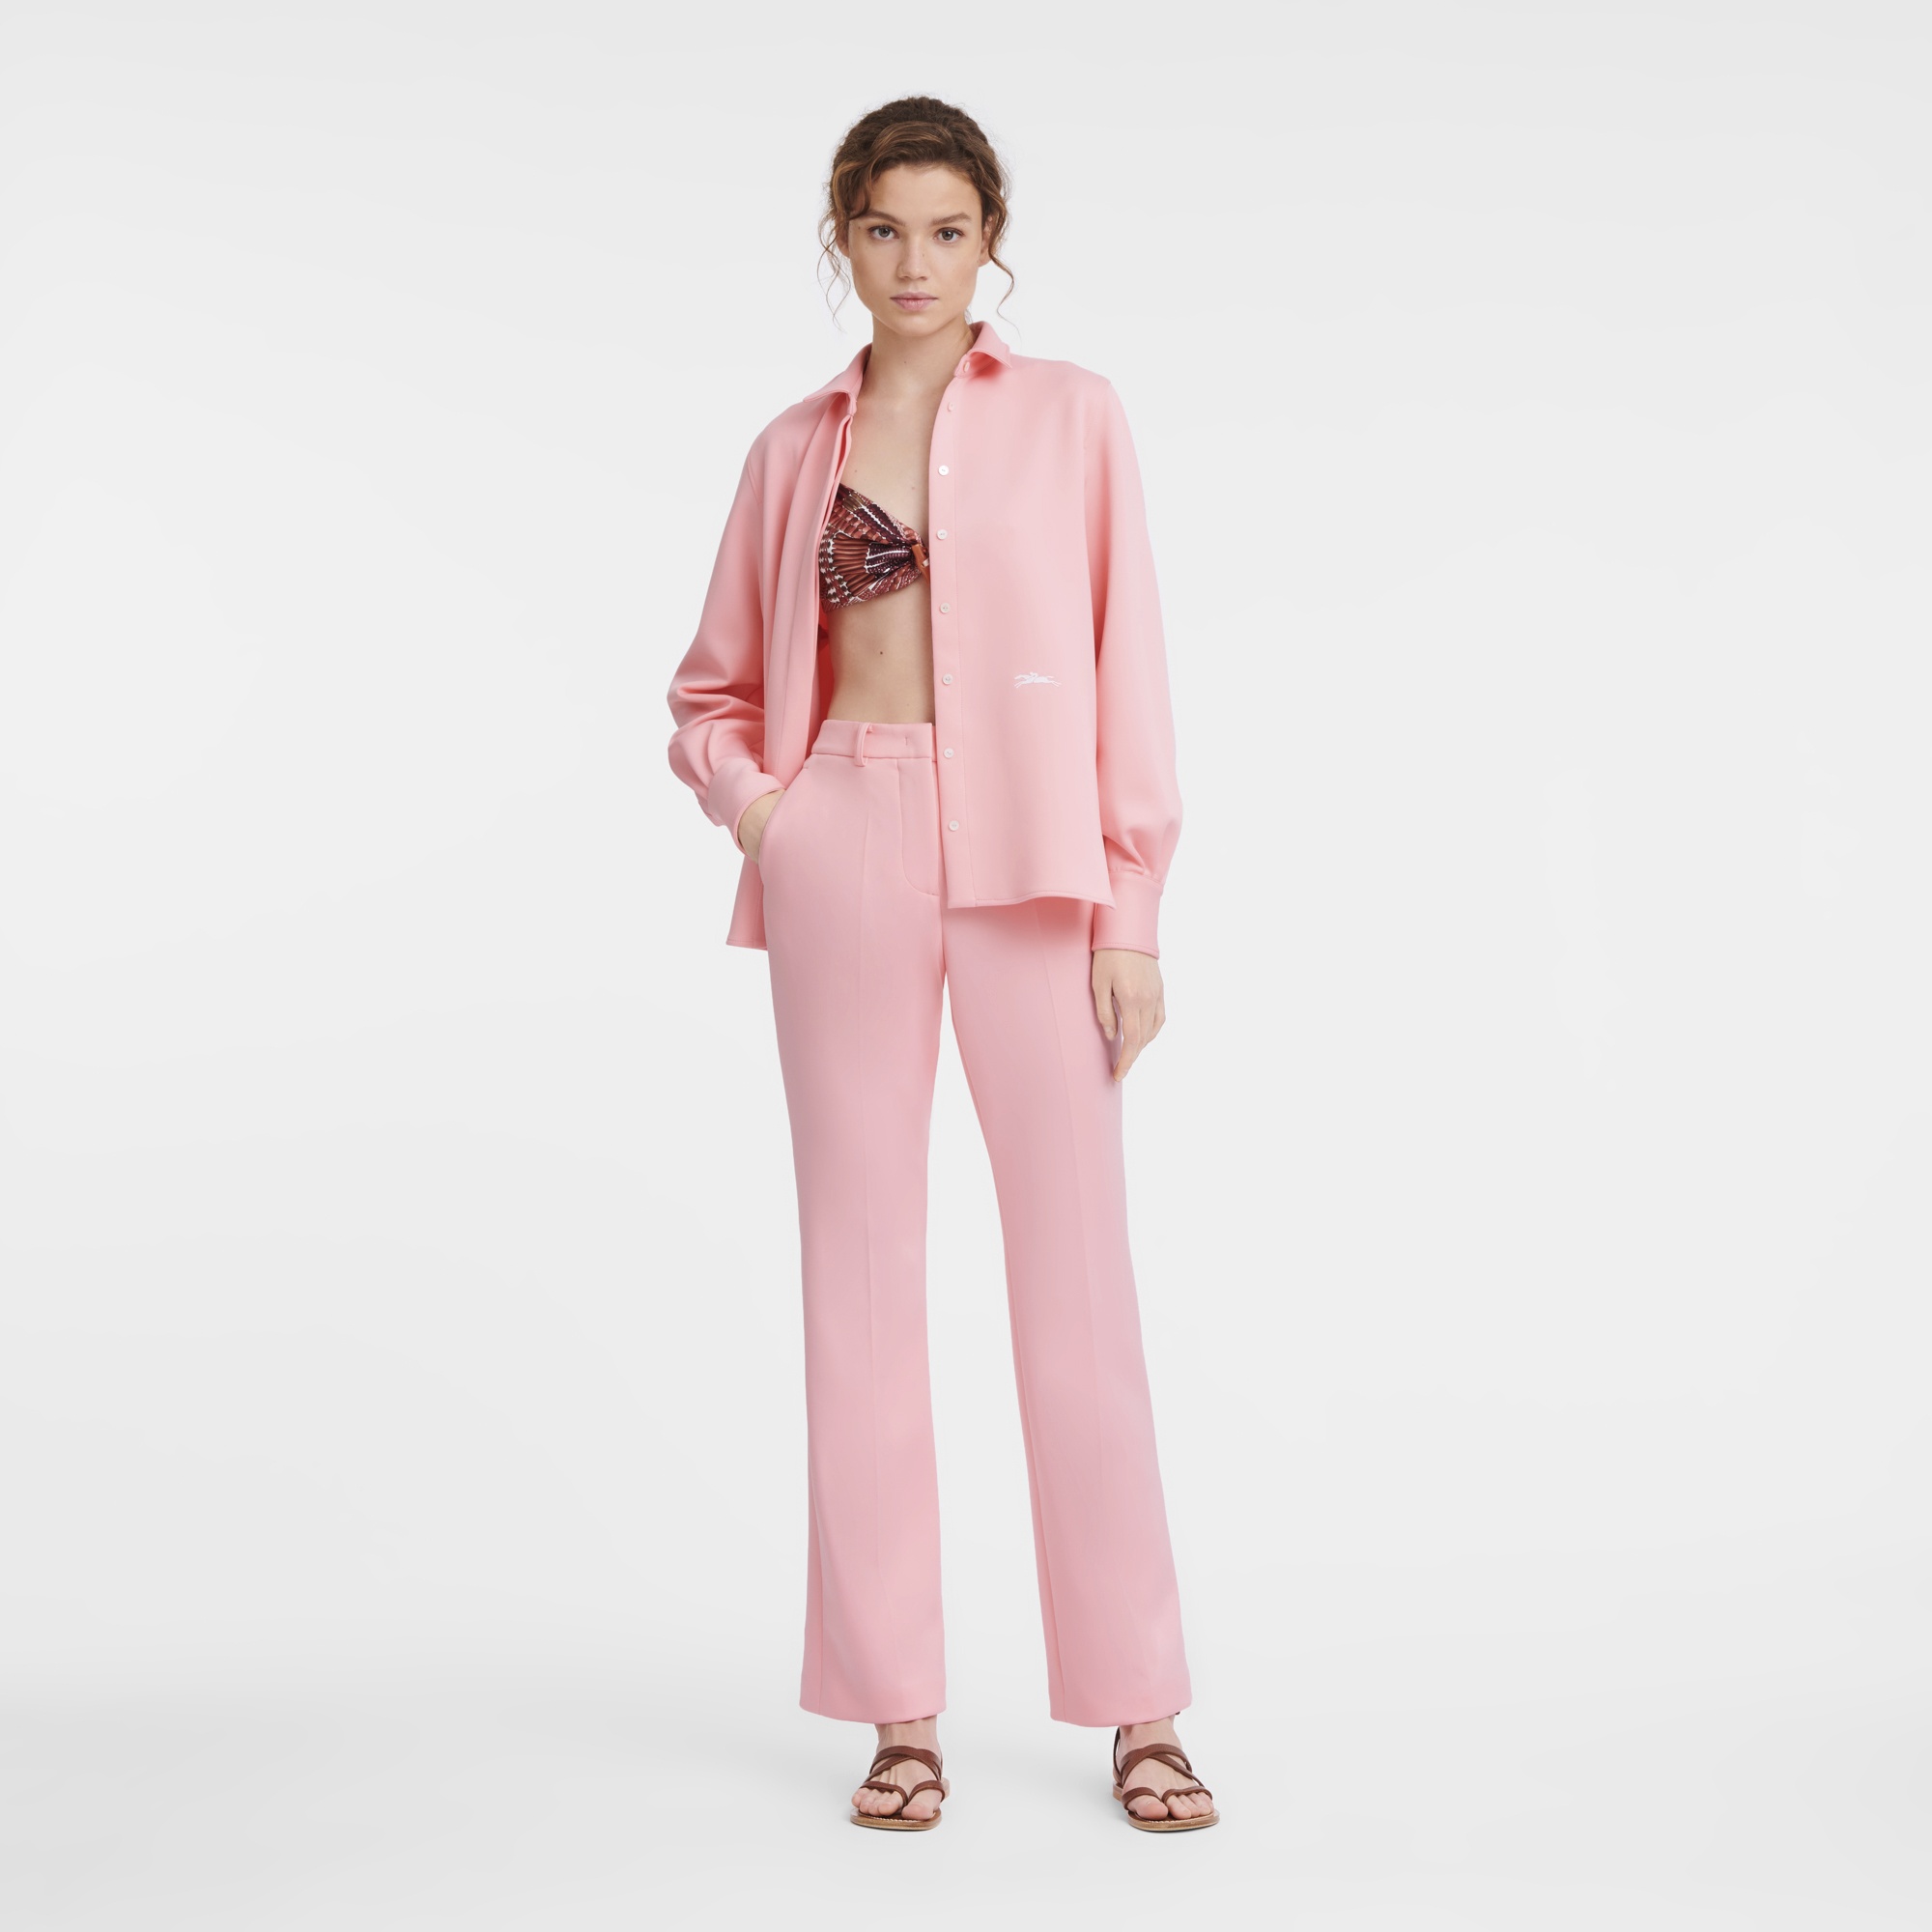 Shirt Pink - Jersey - 2